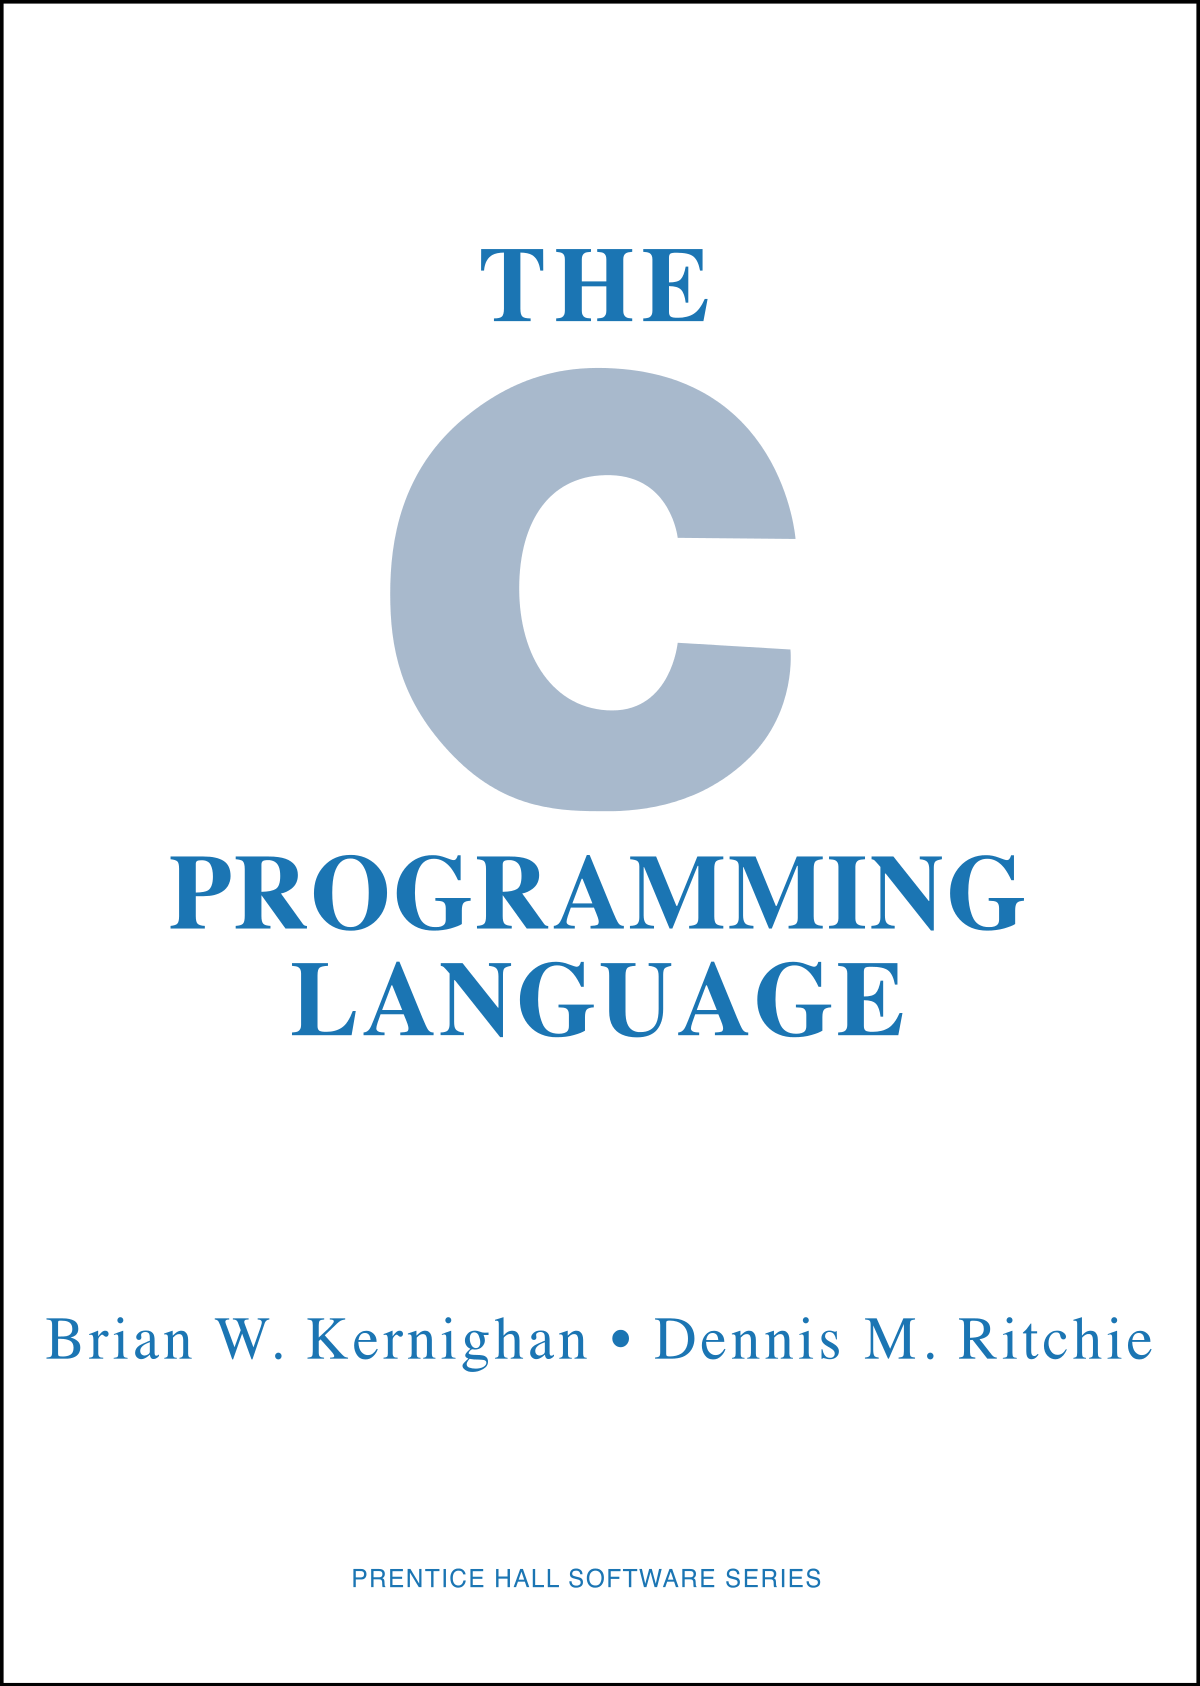 C Programming Logo - The C Programming Language